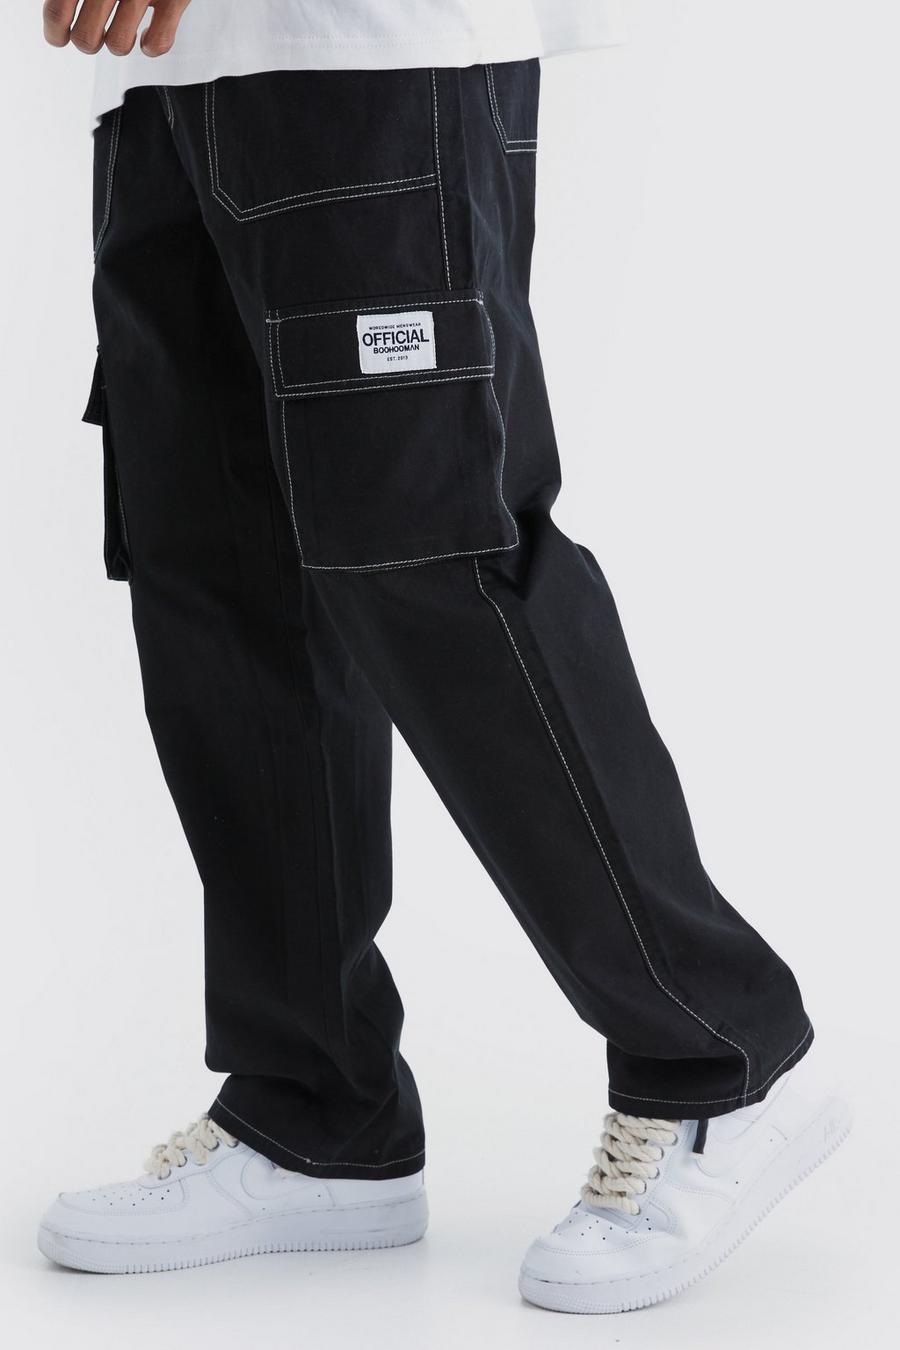 Pantaloni Cargo rilassati con cuciture a contrasto ed etichetta in tessuto, Black